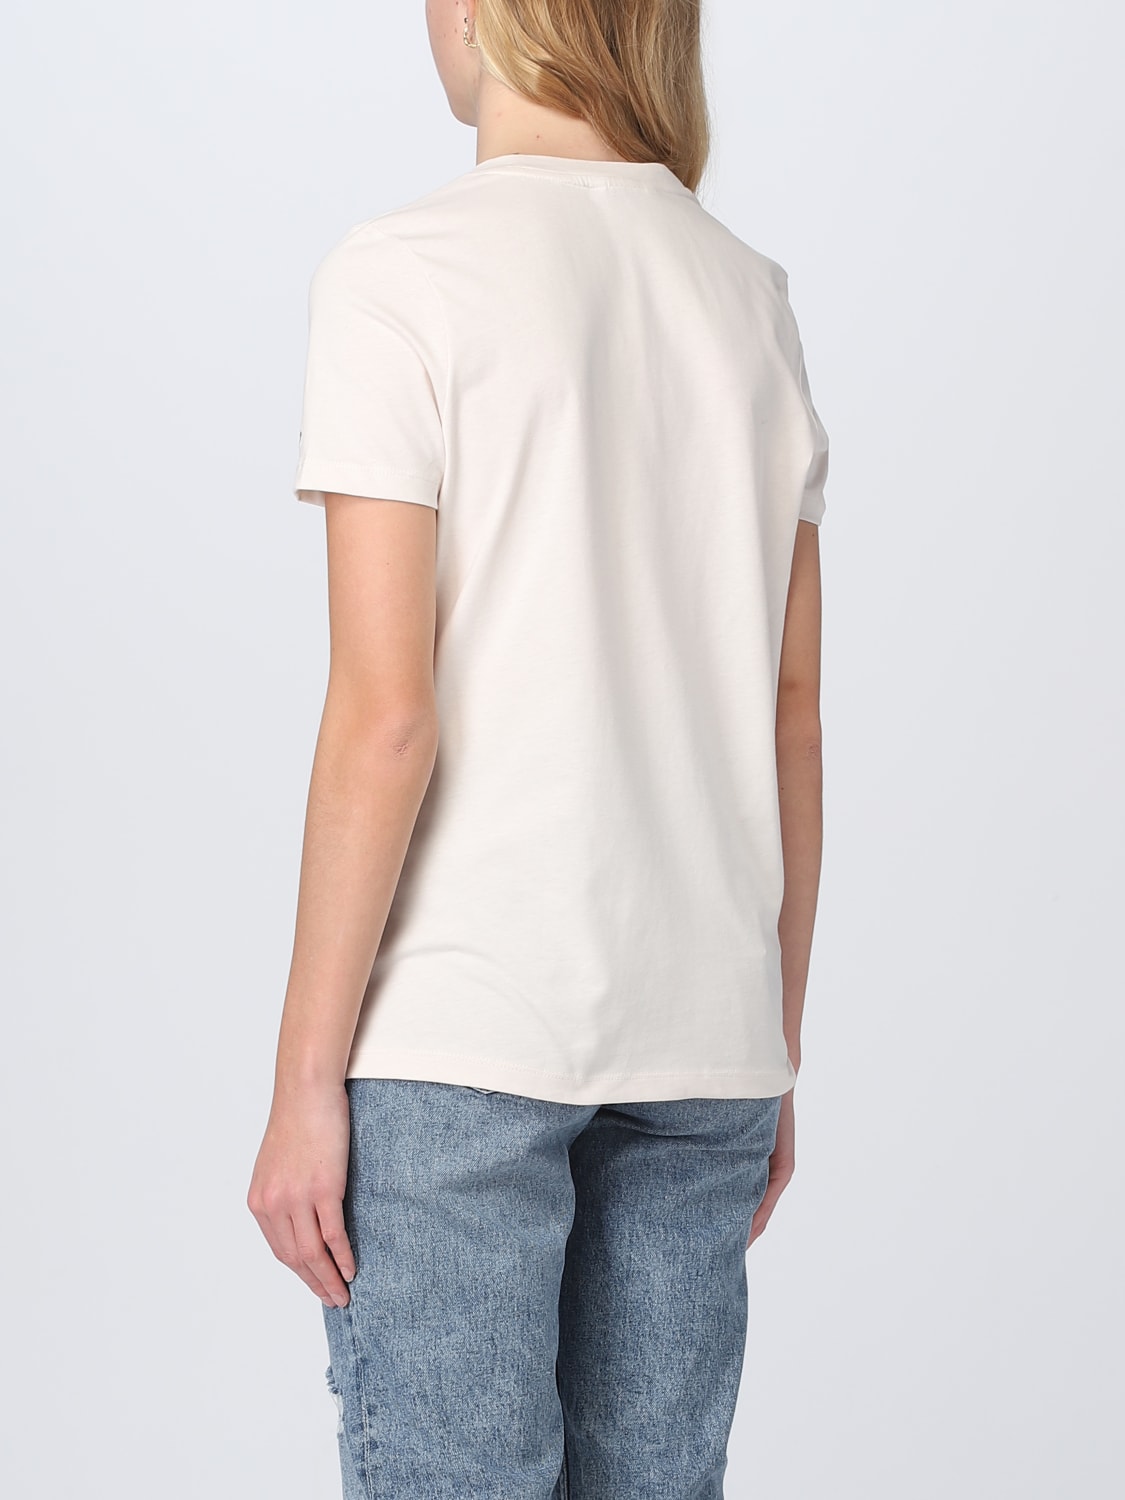 TOMMY Damen - Weiß Tommy Hilfiger T-Shirt online auf GIGLIO.COM